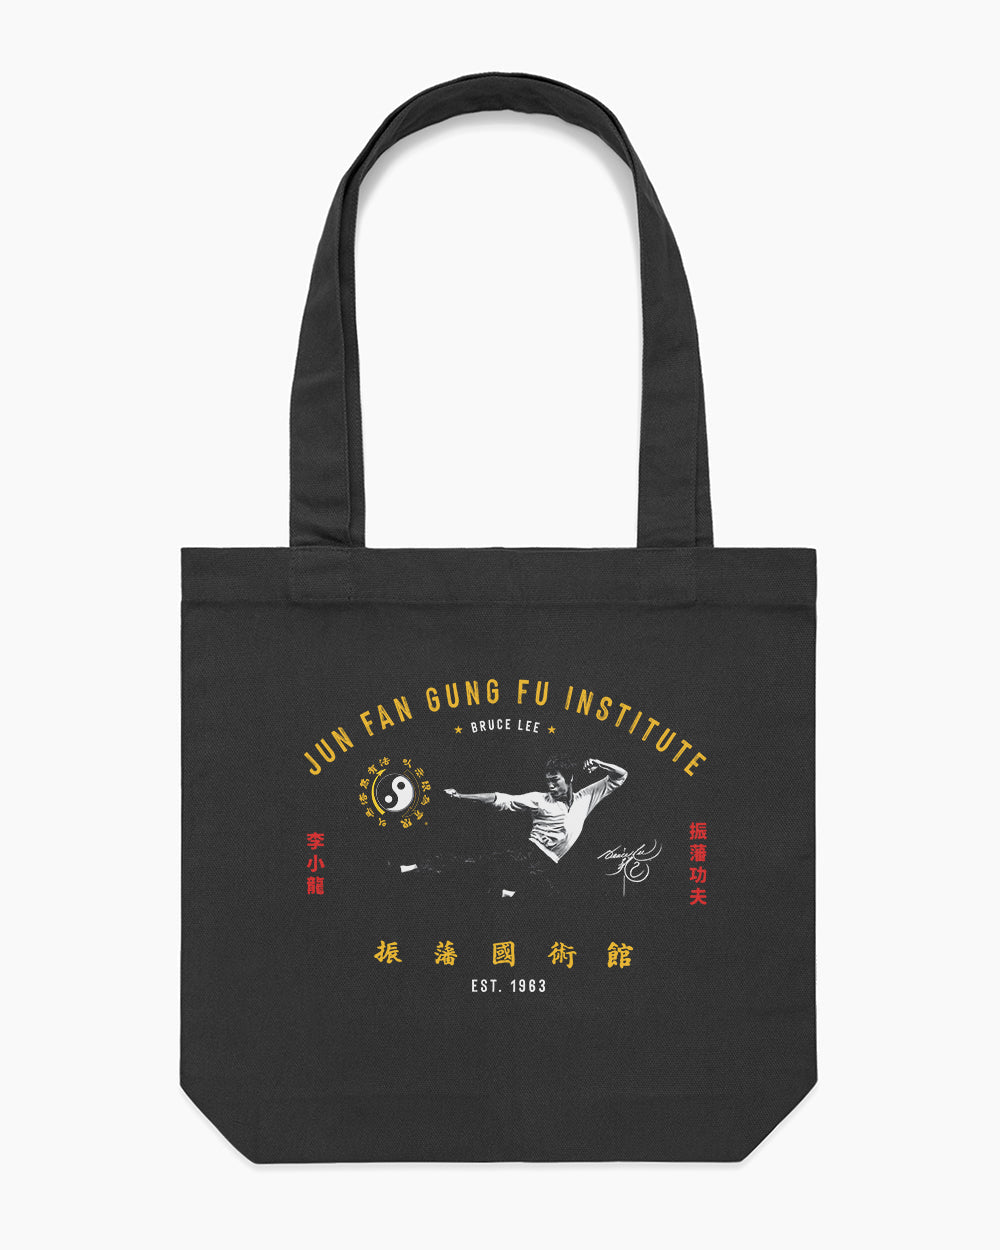 Jun Fan Gung Fu Institute Tote Bag Europe Online #colour_black